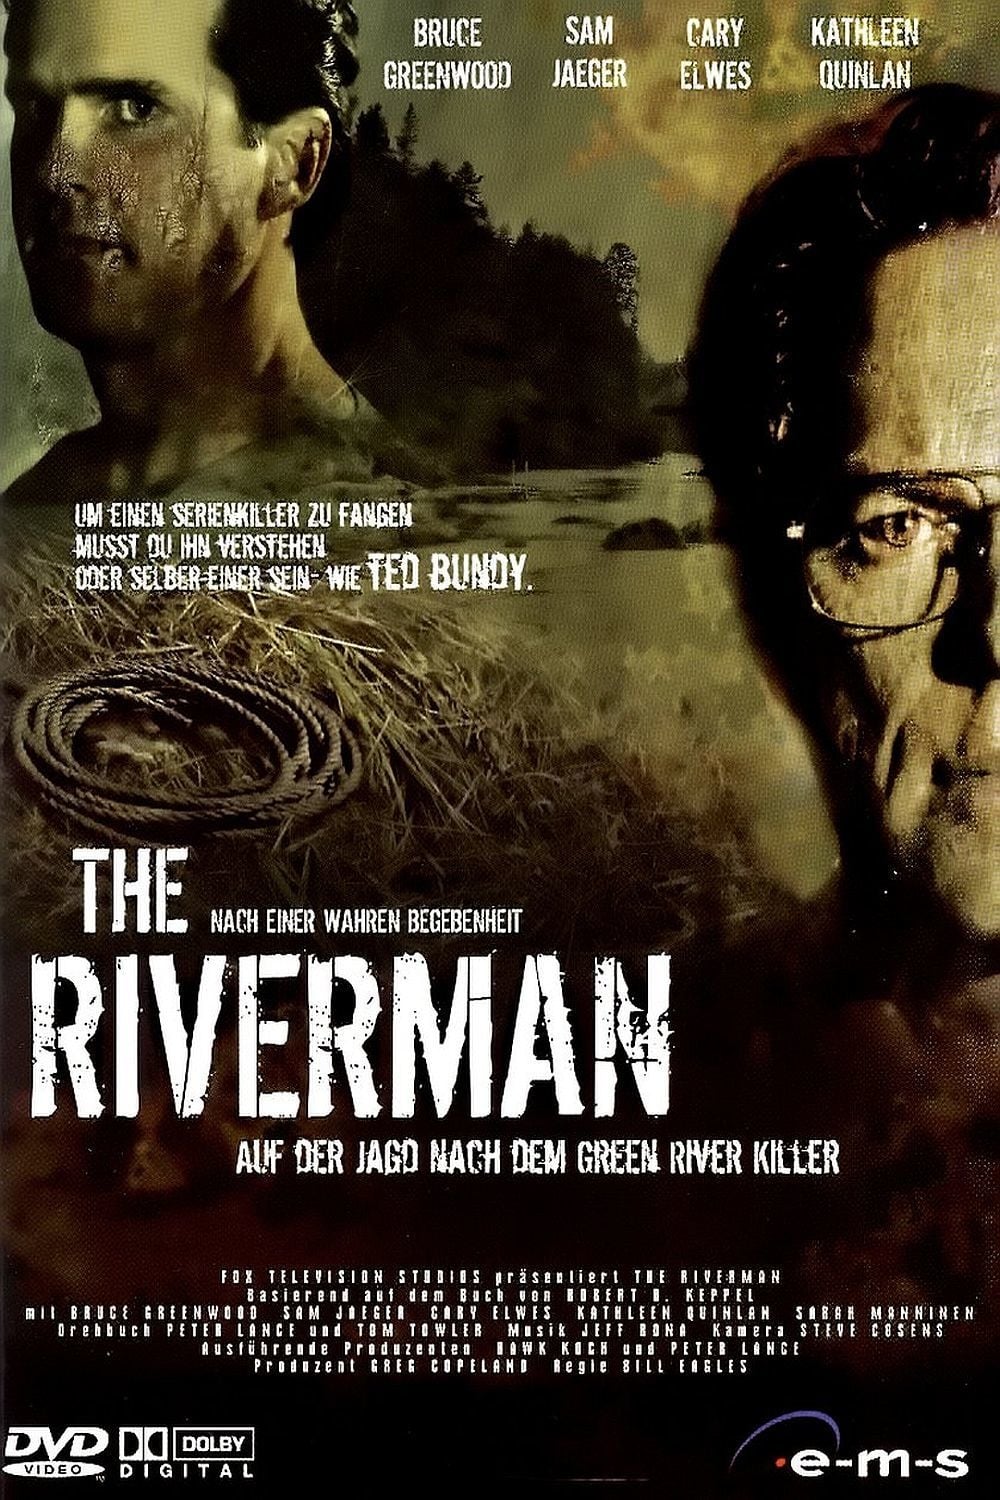 Plakat von "The Riverman - Auf der Jagd nach dem Green River Killer"